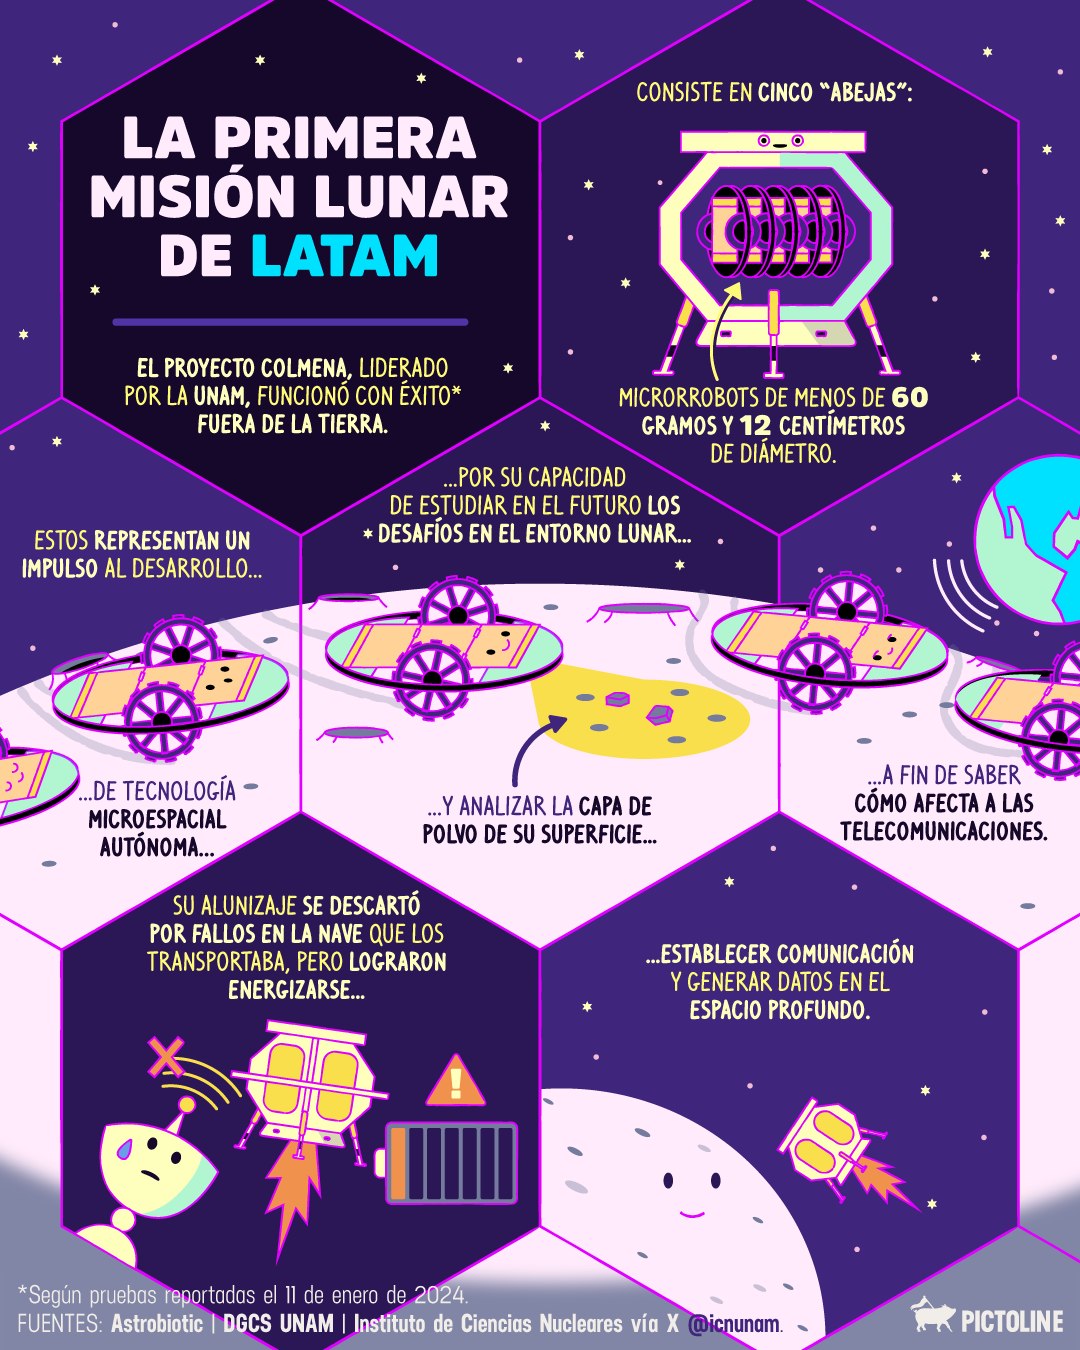 👏👏 Aplausos de pie para LATAM y el impulso de la tecnología microespacial autónoma para volver a la Luna 🚀🌕 #ProyectoColmena #UNAM